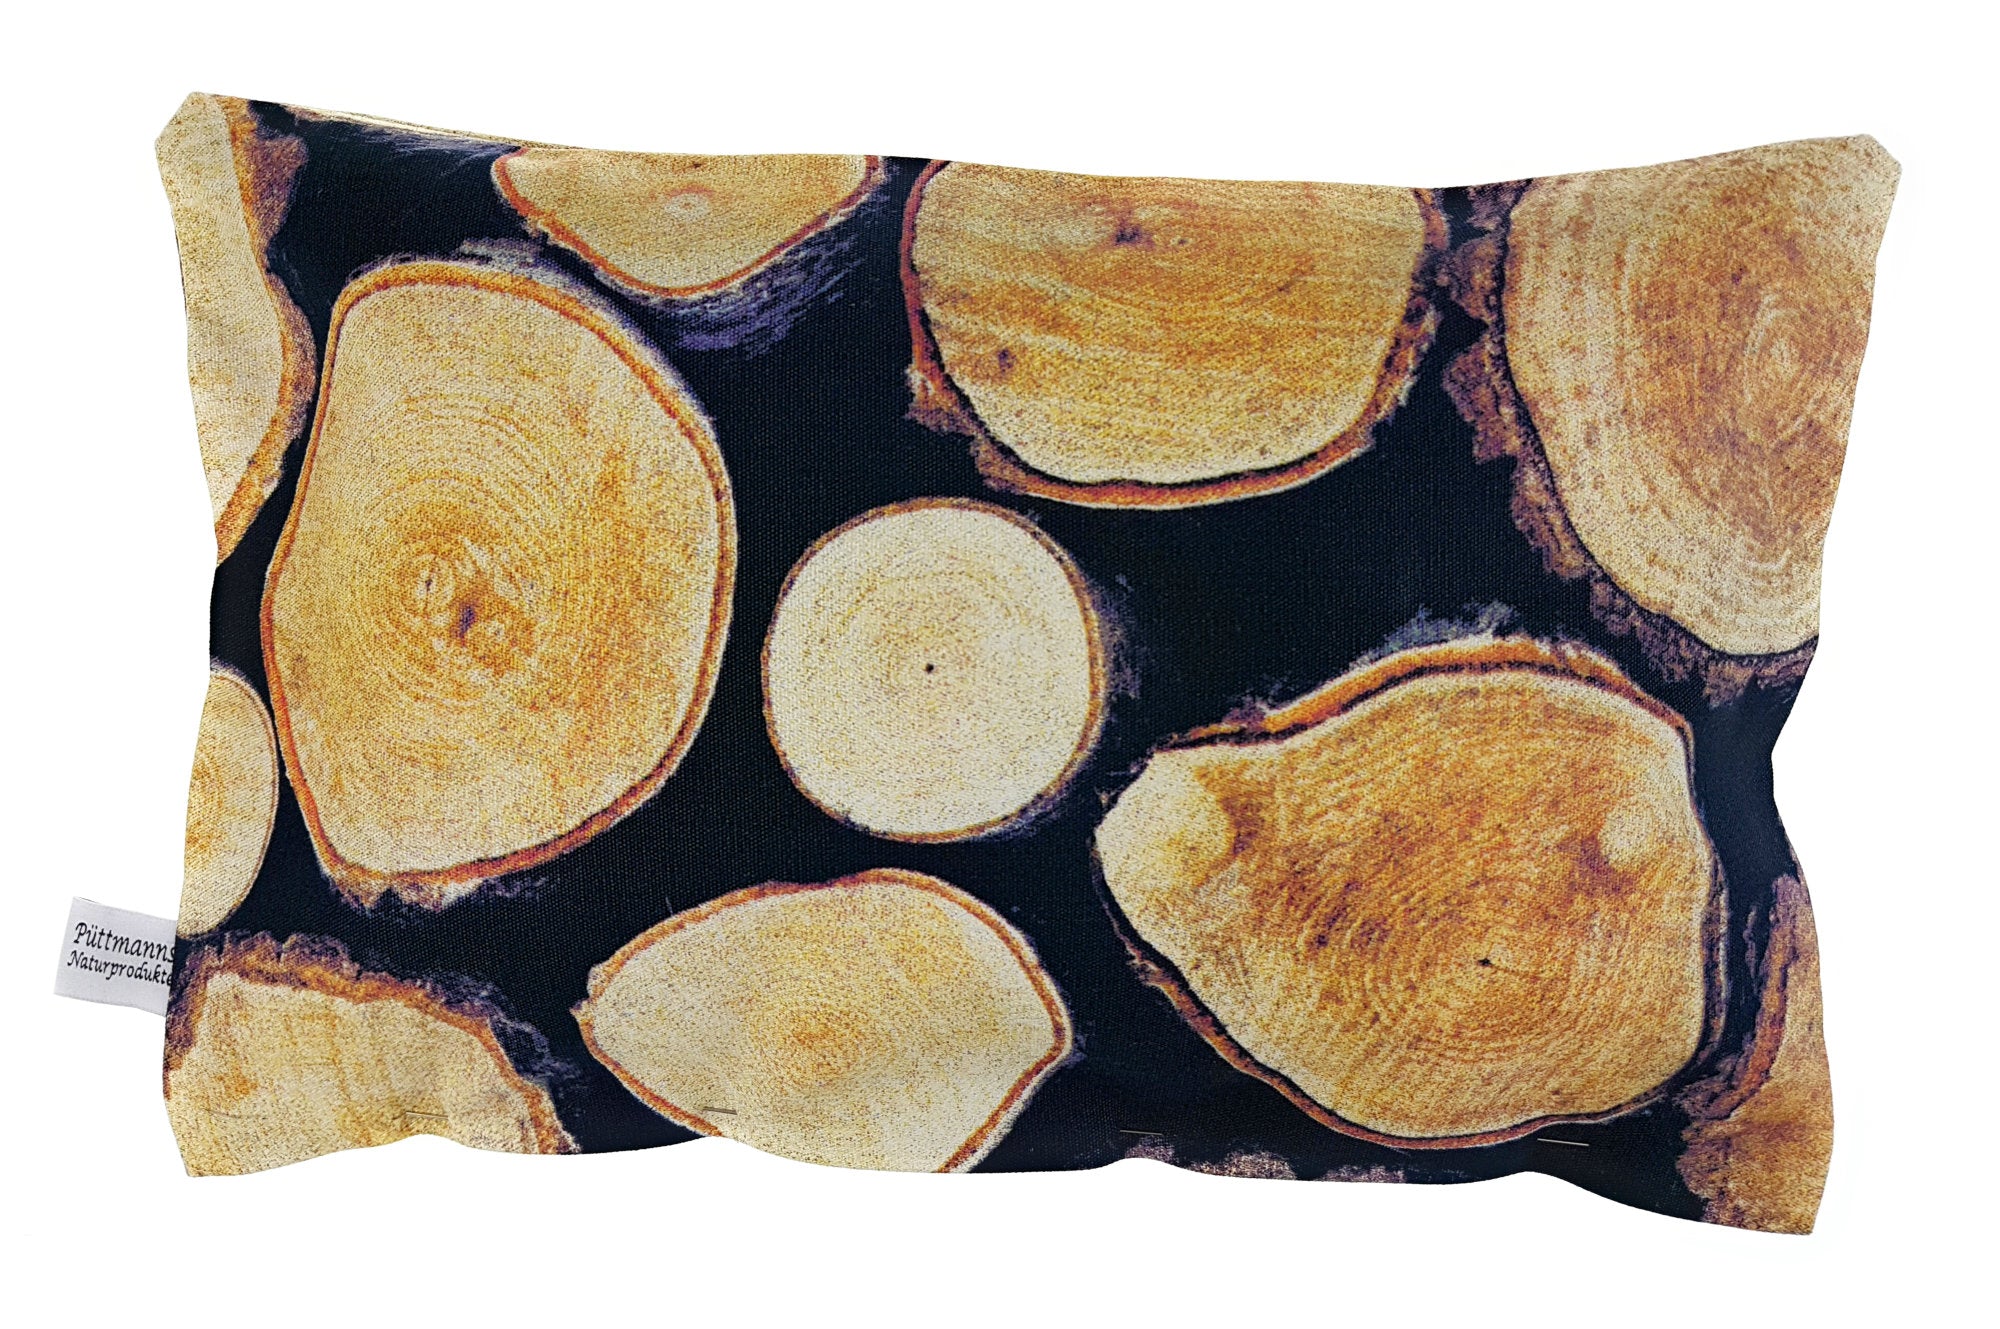 Zirbenkissen aus Baumwolle 30 x 20 cm mit Zirbenholz aus Tirol gefüllt